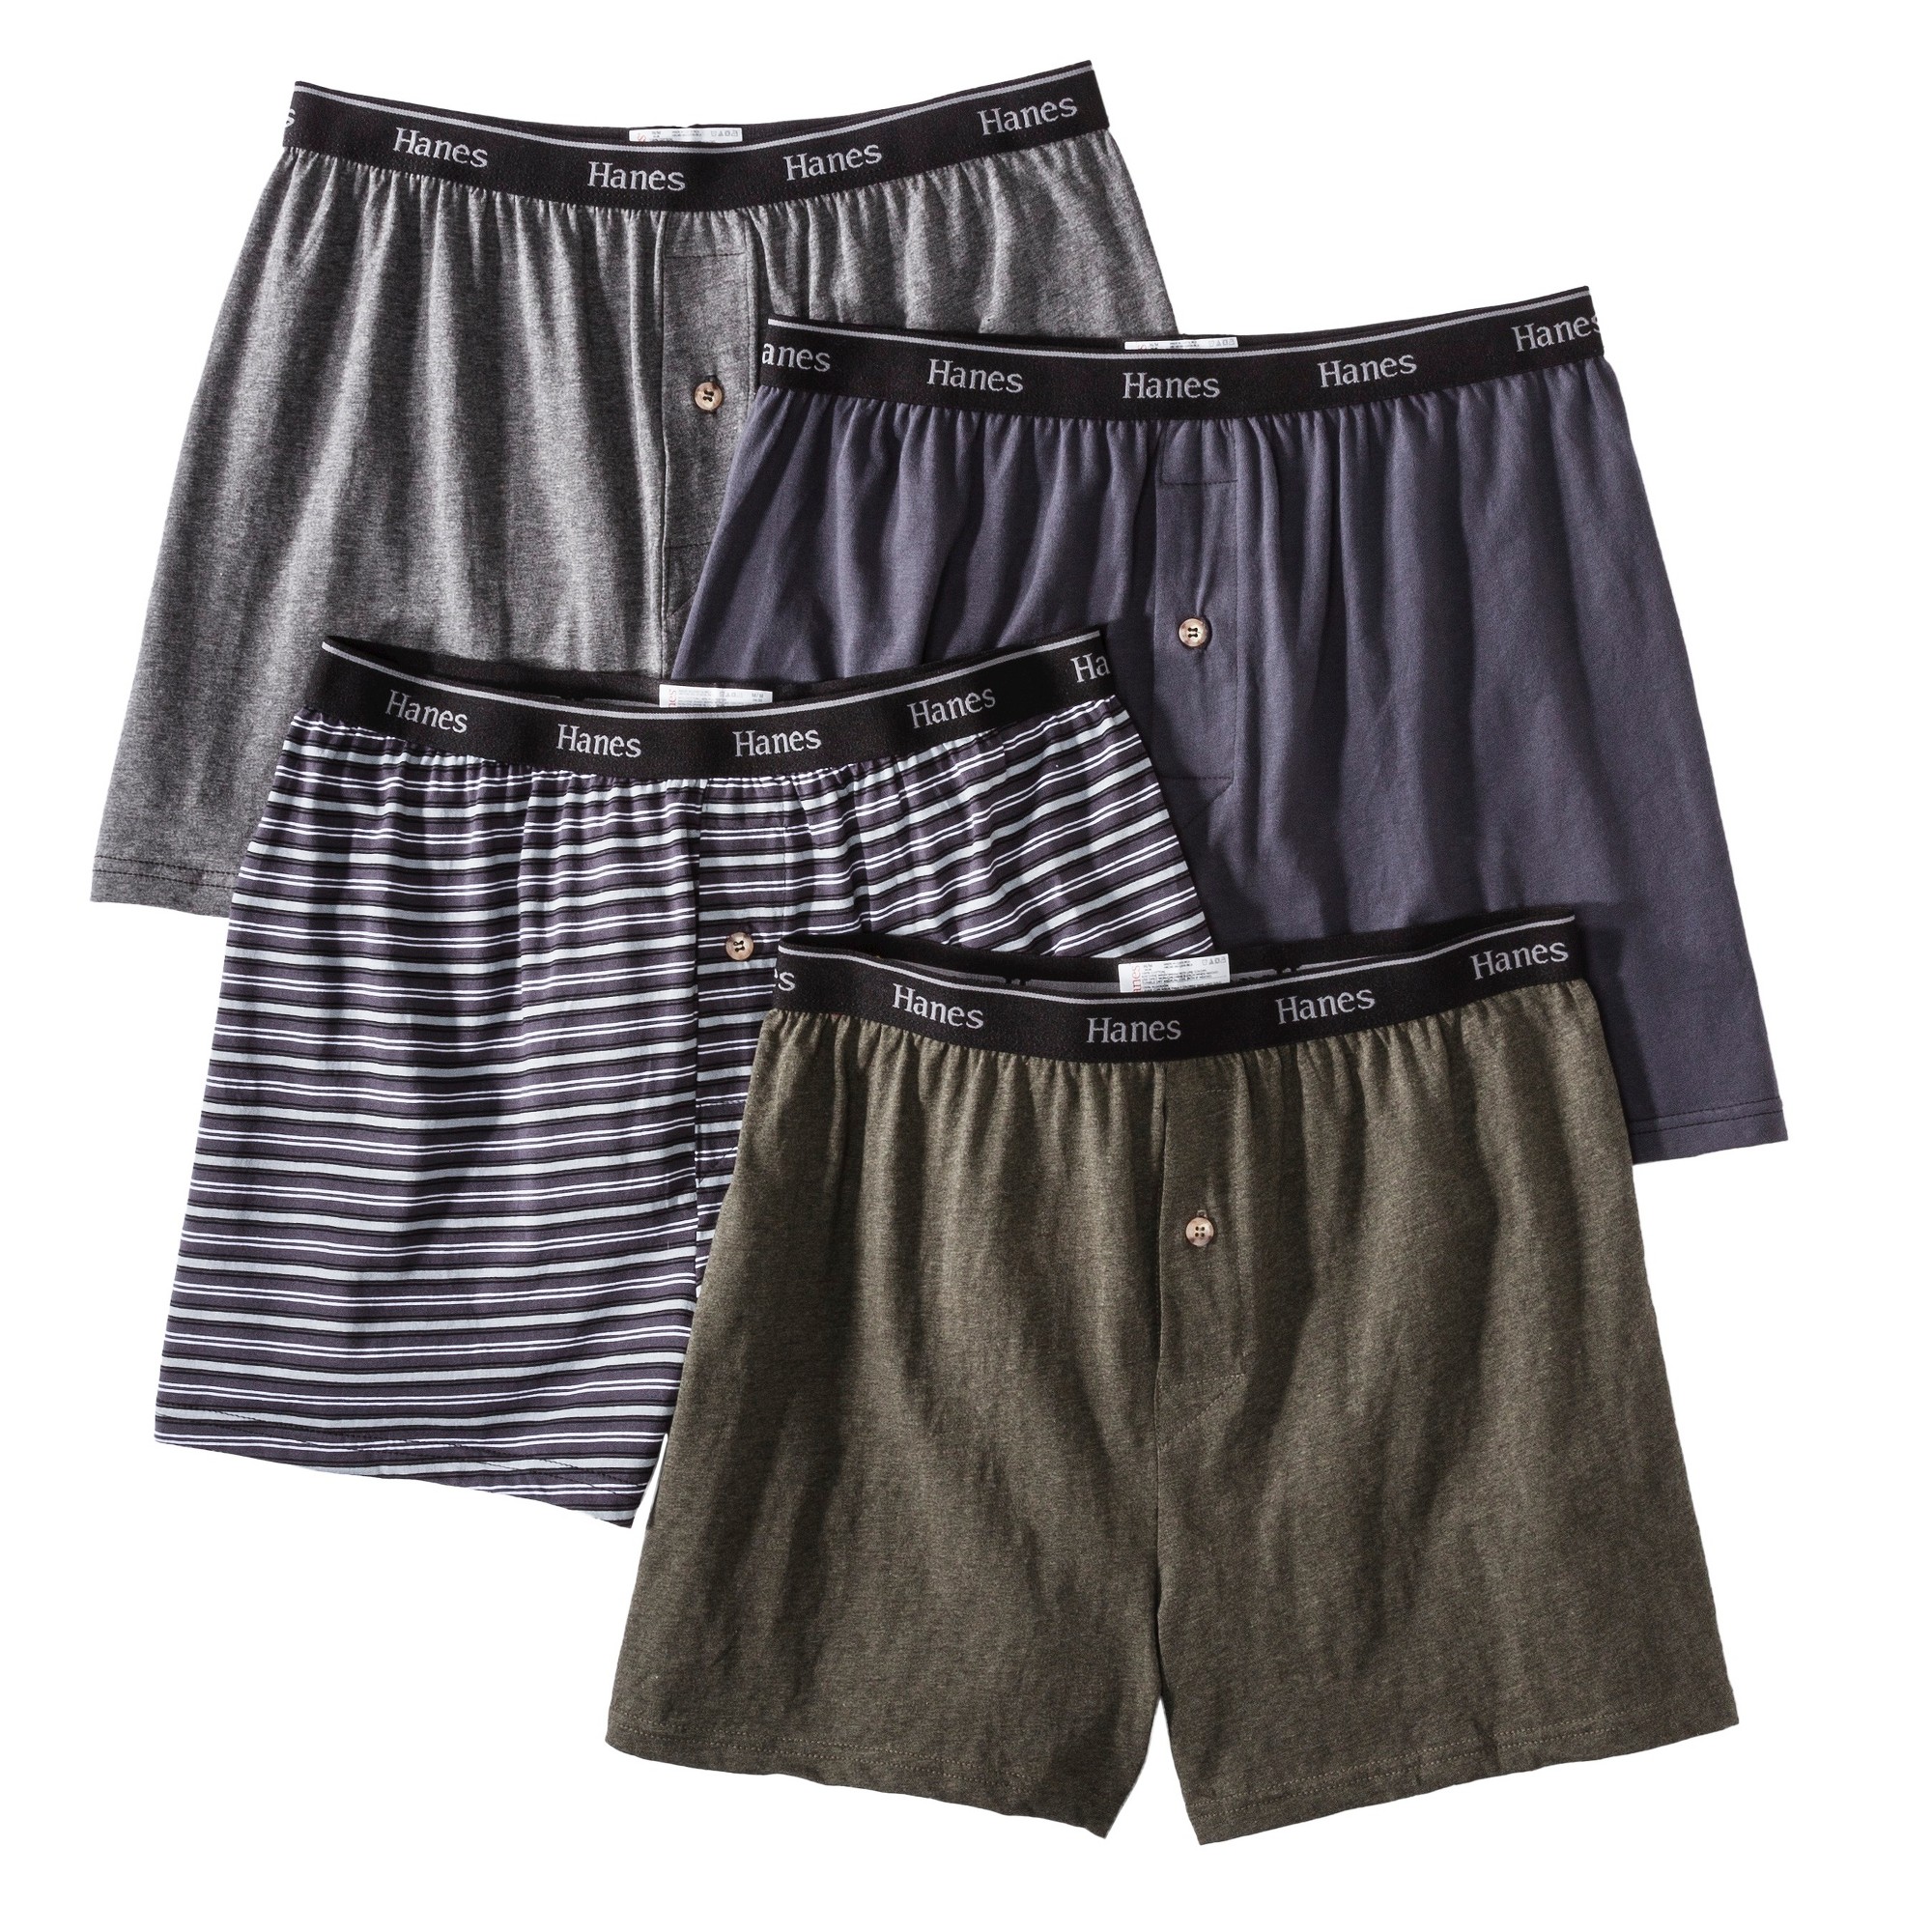 Hanes Premium Men's 4pk Knit Boxer Briefs - Gray S, Size: Small, MultiColored